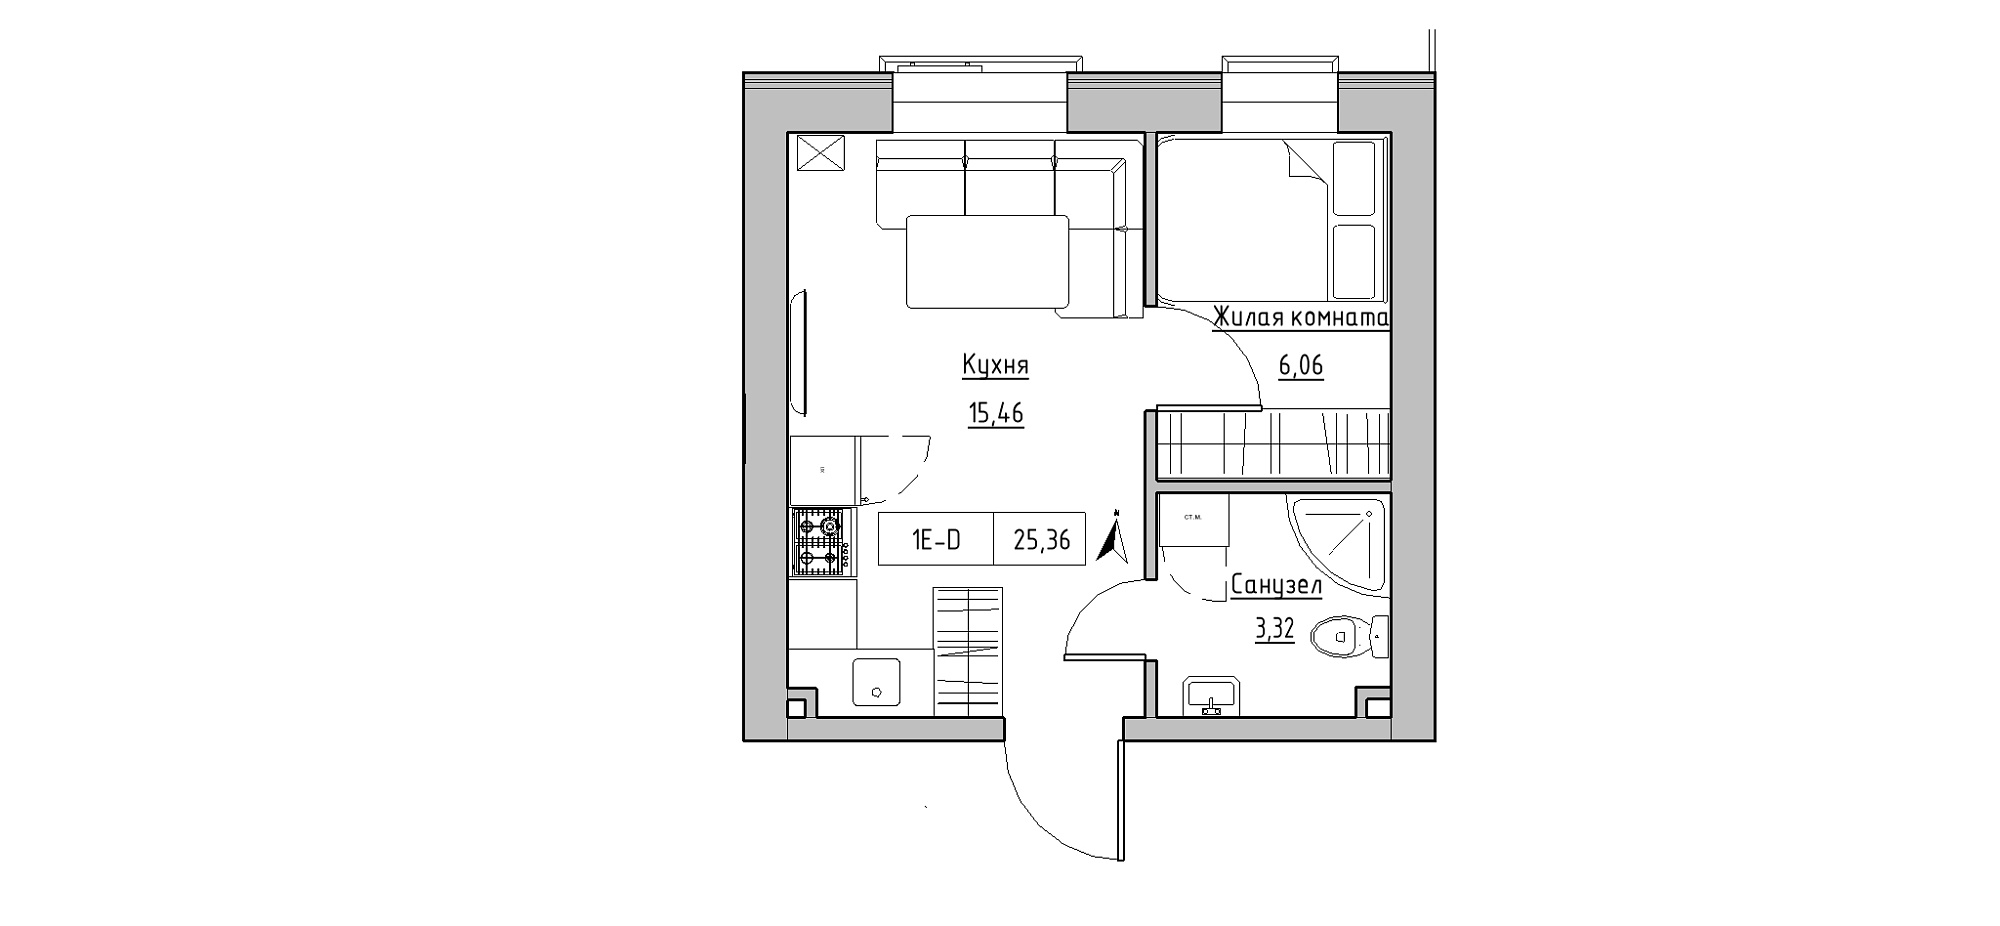 Планування 1-к квартира площею 25.36м2, KS-020-03/0002.